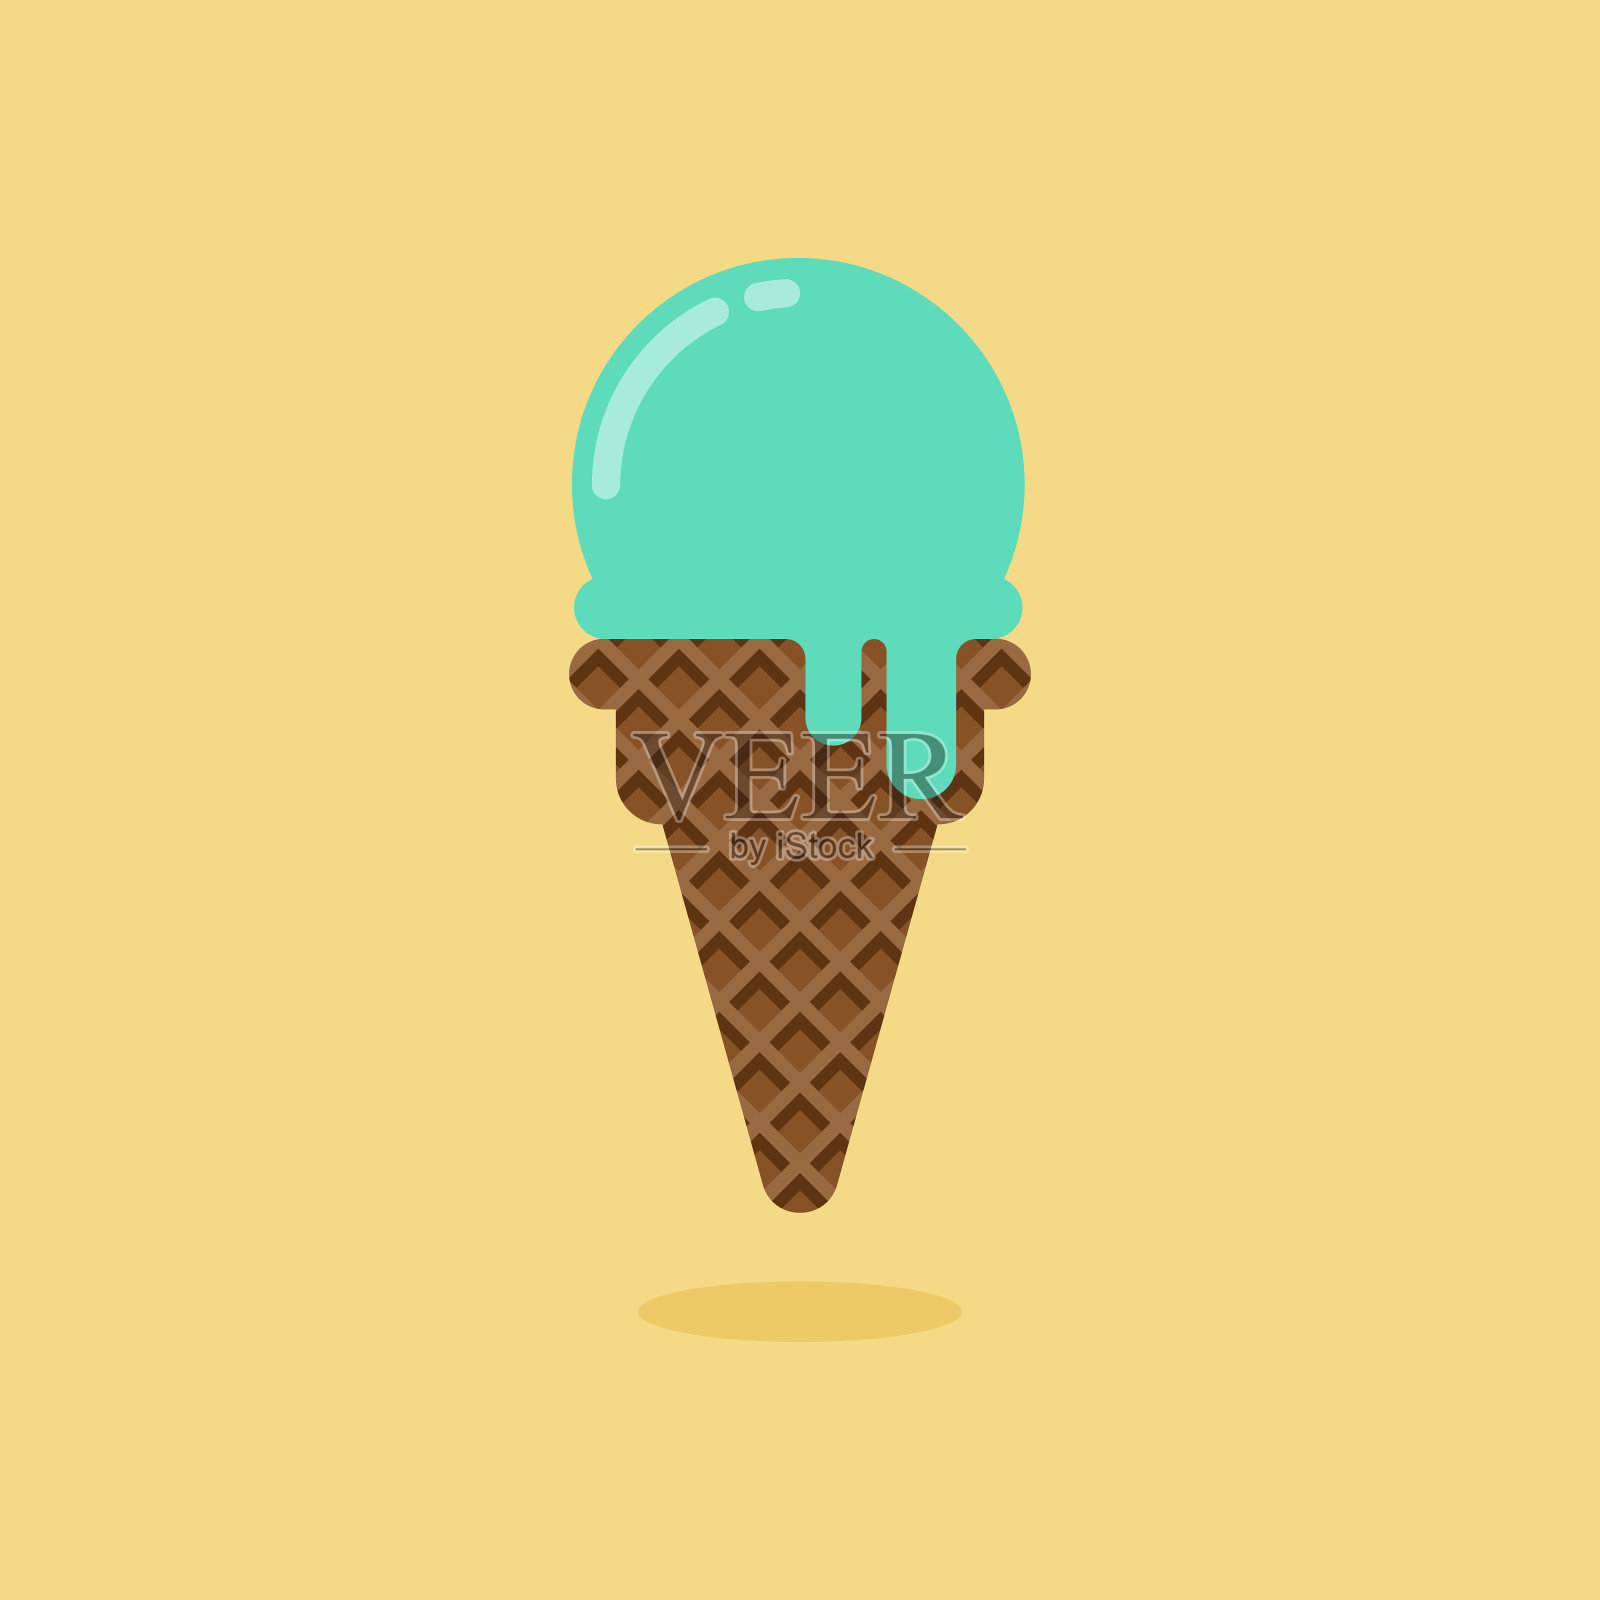 薄荷口味的甜筒冰淇淋设计元素图片